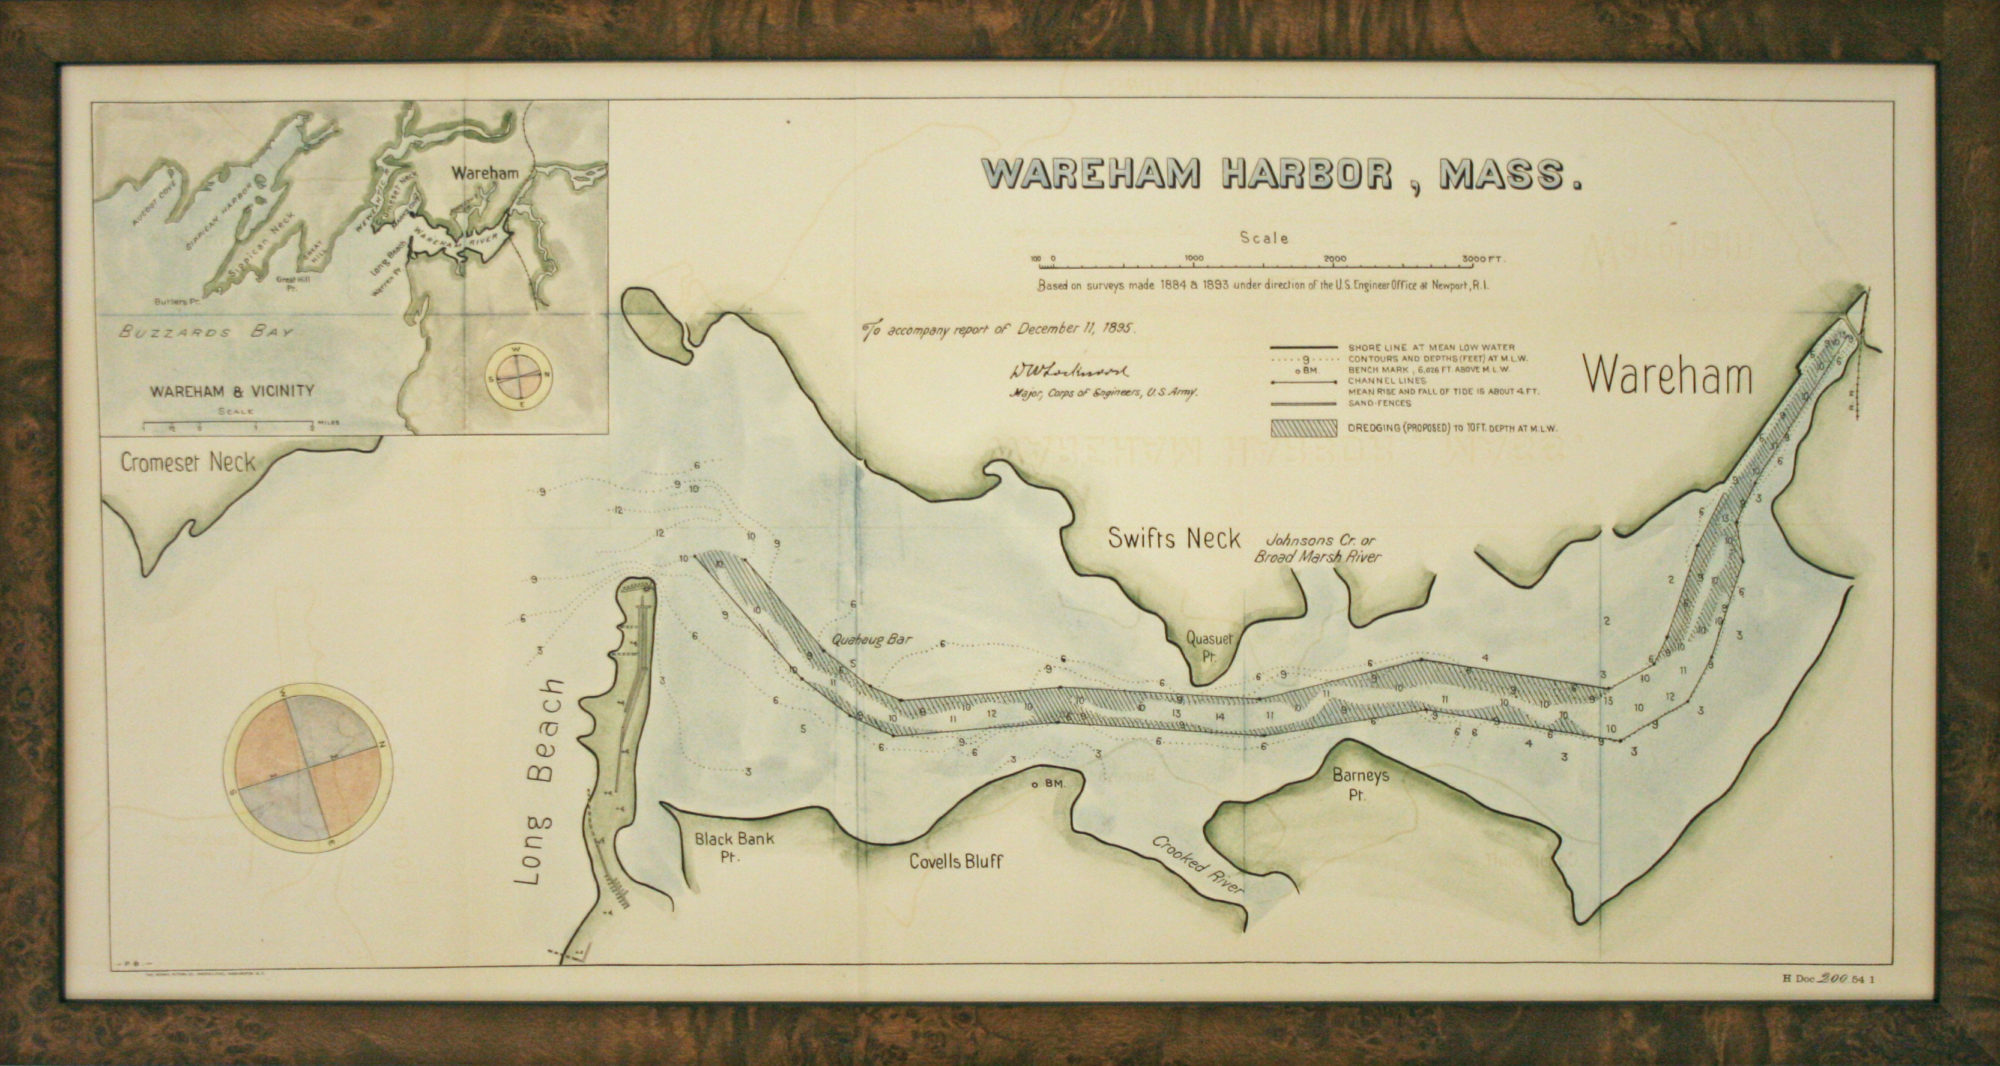 Wareham Harbor, Mass. 1895